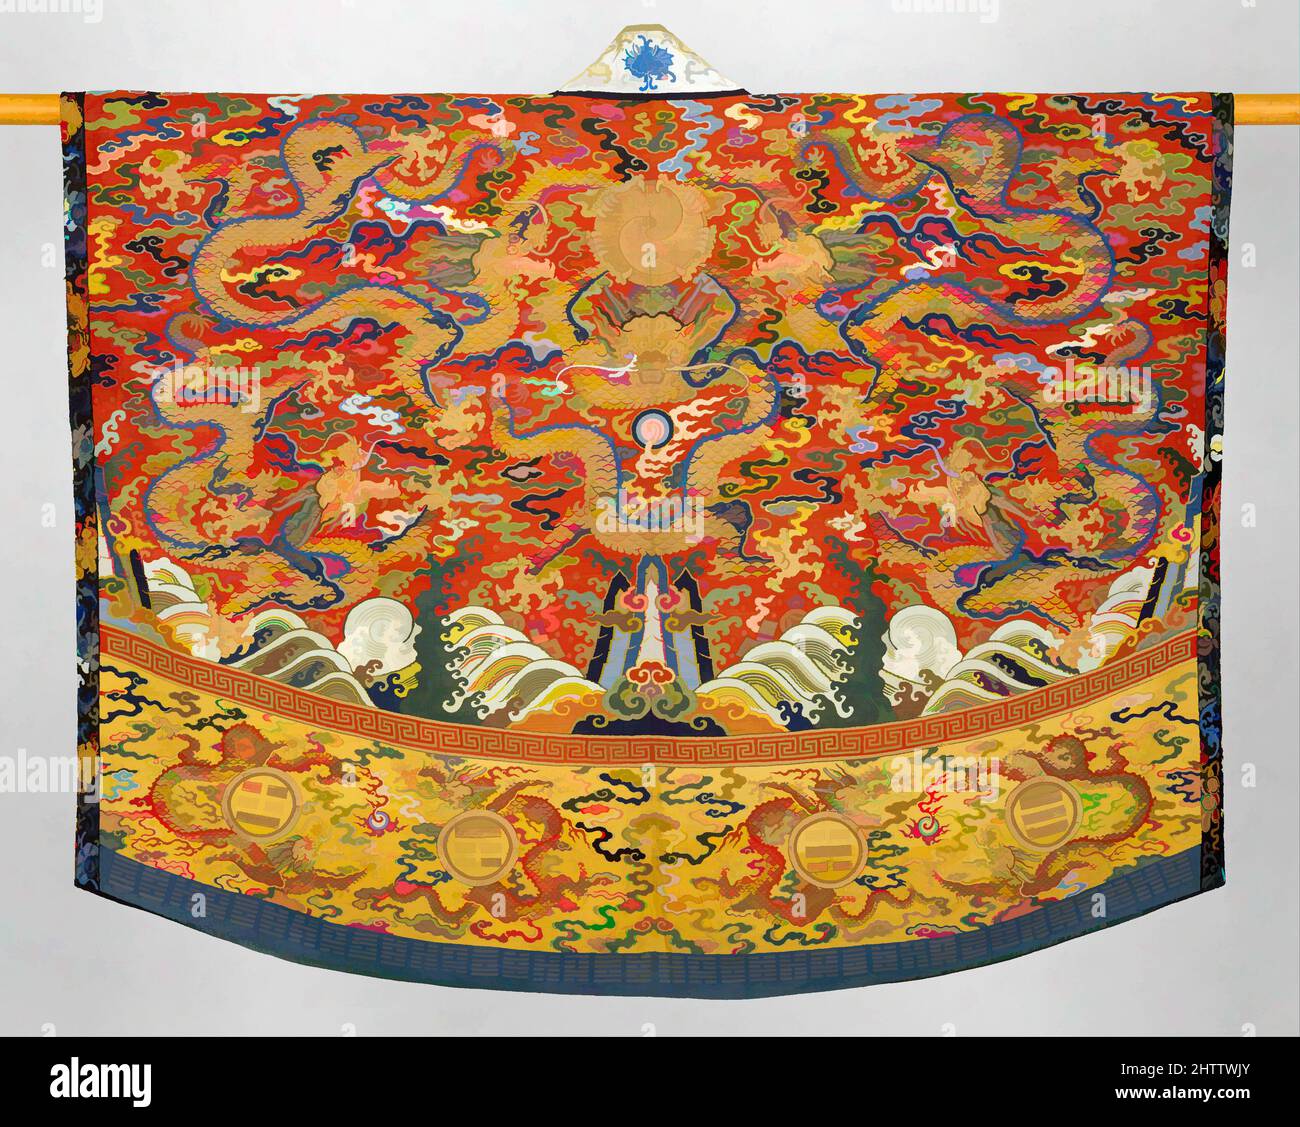 Kunst, inspiriert von der daoistischen Robe (Jiang yi), der Ming-Dynastie (1368–1644), 17.. Jahrhundert, China, Seide und metallische Webteppiche (Kesi), insgesamt: 54 3/4 x 65 3/4 Zoll (139,1 x 167 cm), Kostüme-Wandteppiche, das poncho-artige jiang yi wird für besondere Zeremonien von hochrangigen Daoisten getragen, Klassische Werke, die von Artotop mit einem Schuss Moderne modernisiert wurden. Formen, Farbe und Wert, auffällige visuelle Wirkung auf Kunst. Emotionen durch Freiheit von Kunstwerken auf zeitgemäße Weise. Eine zeitlose Botschaft, die eine wild kreative neue Richtung verfolgt. Künstler, die sich dem digitalen Medium zuwenden und die Artotop NFT erschaffen Stockfoto